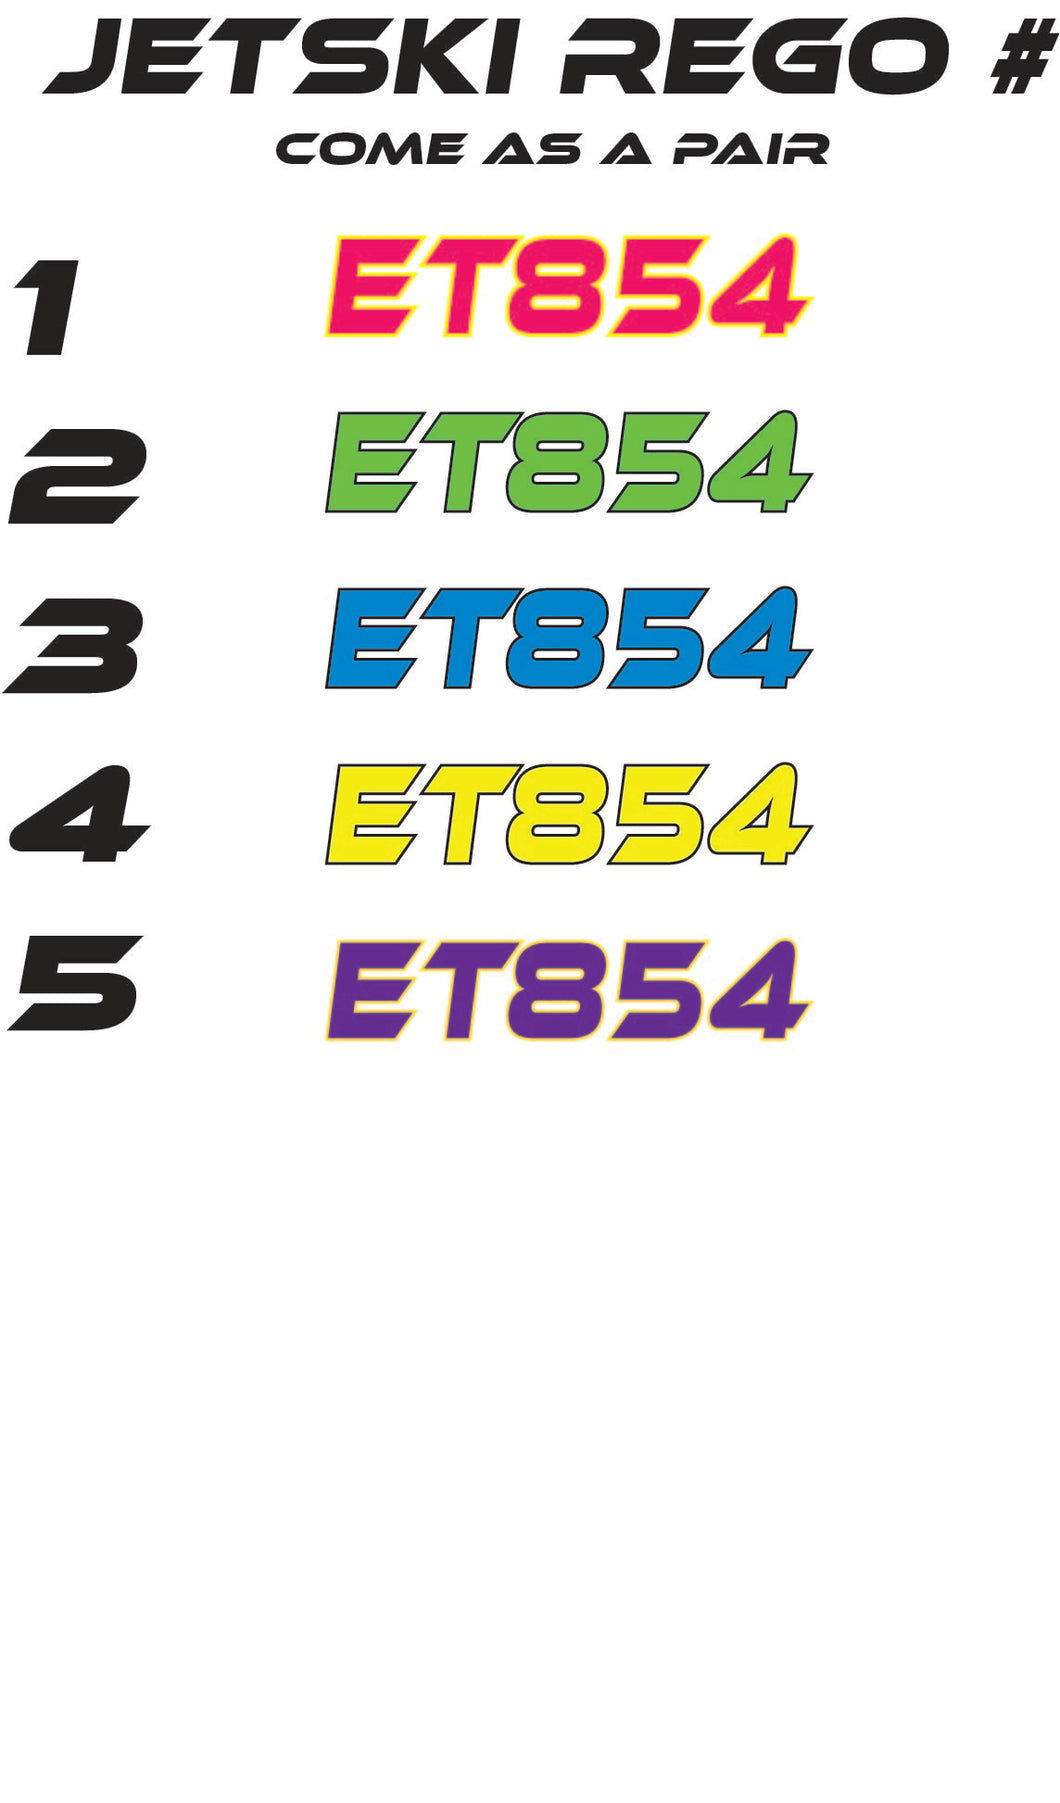 Jetski Registration Number - Colour / Outlined